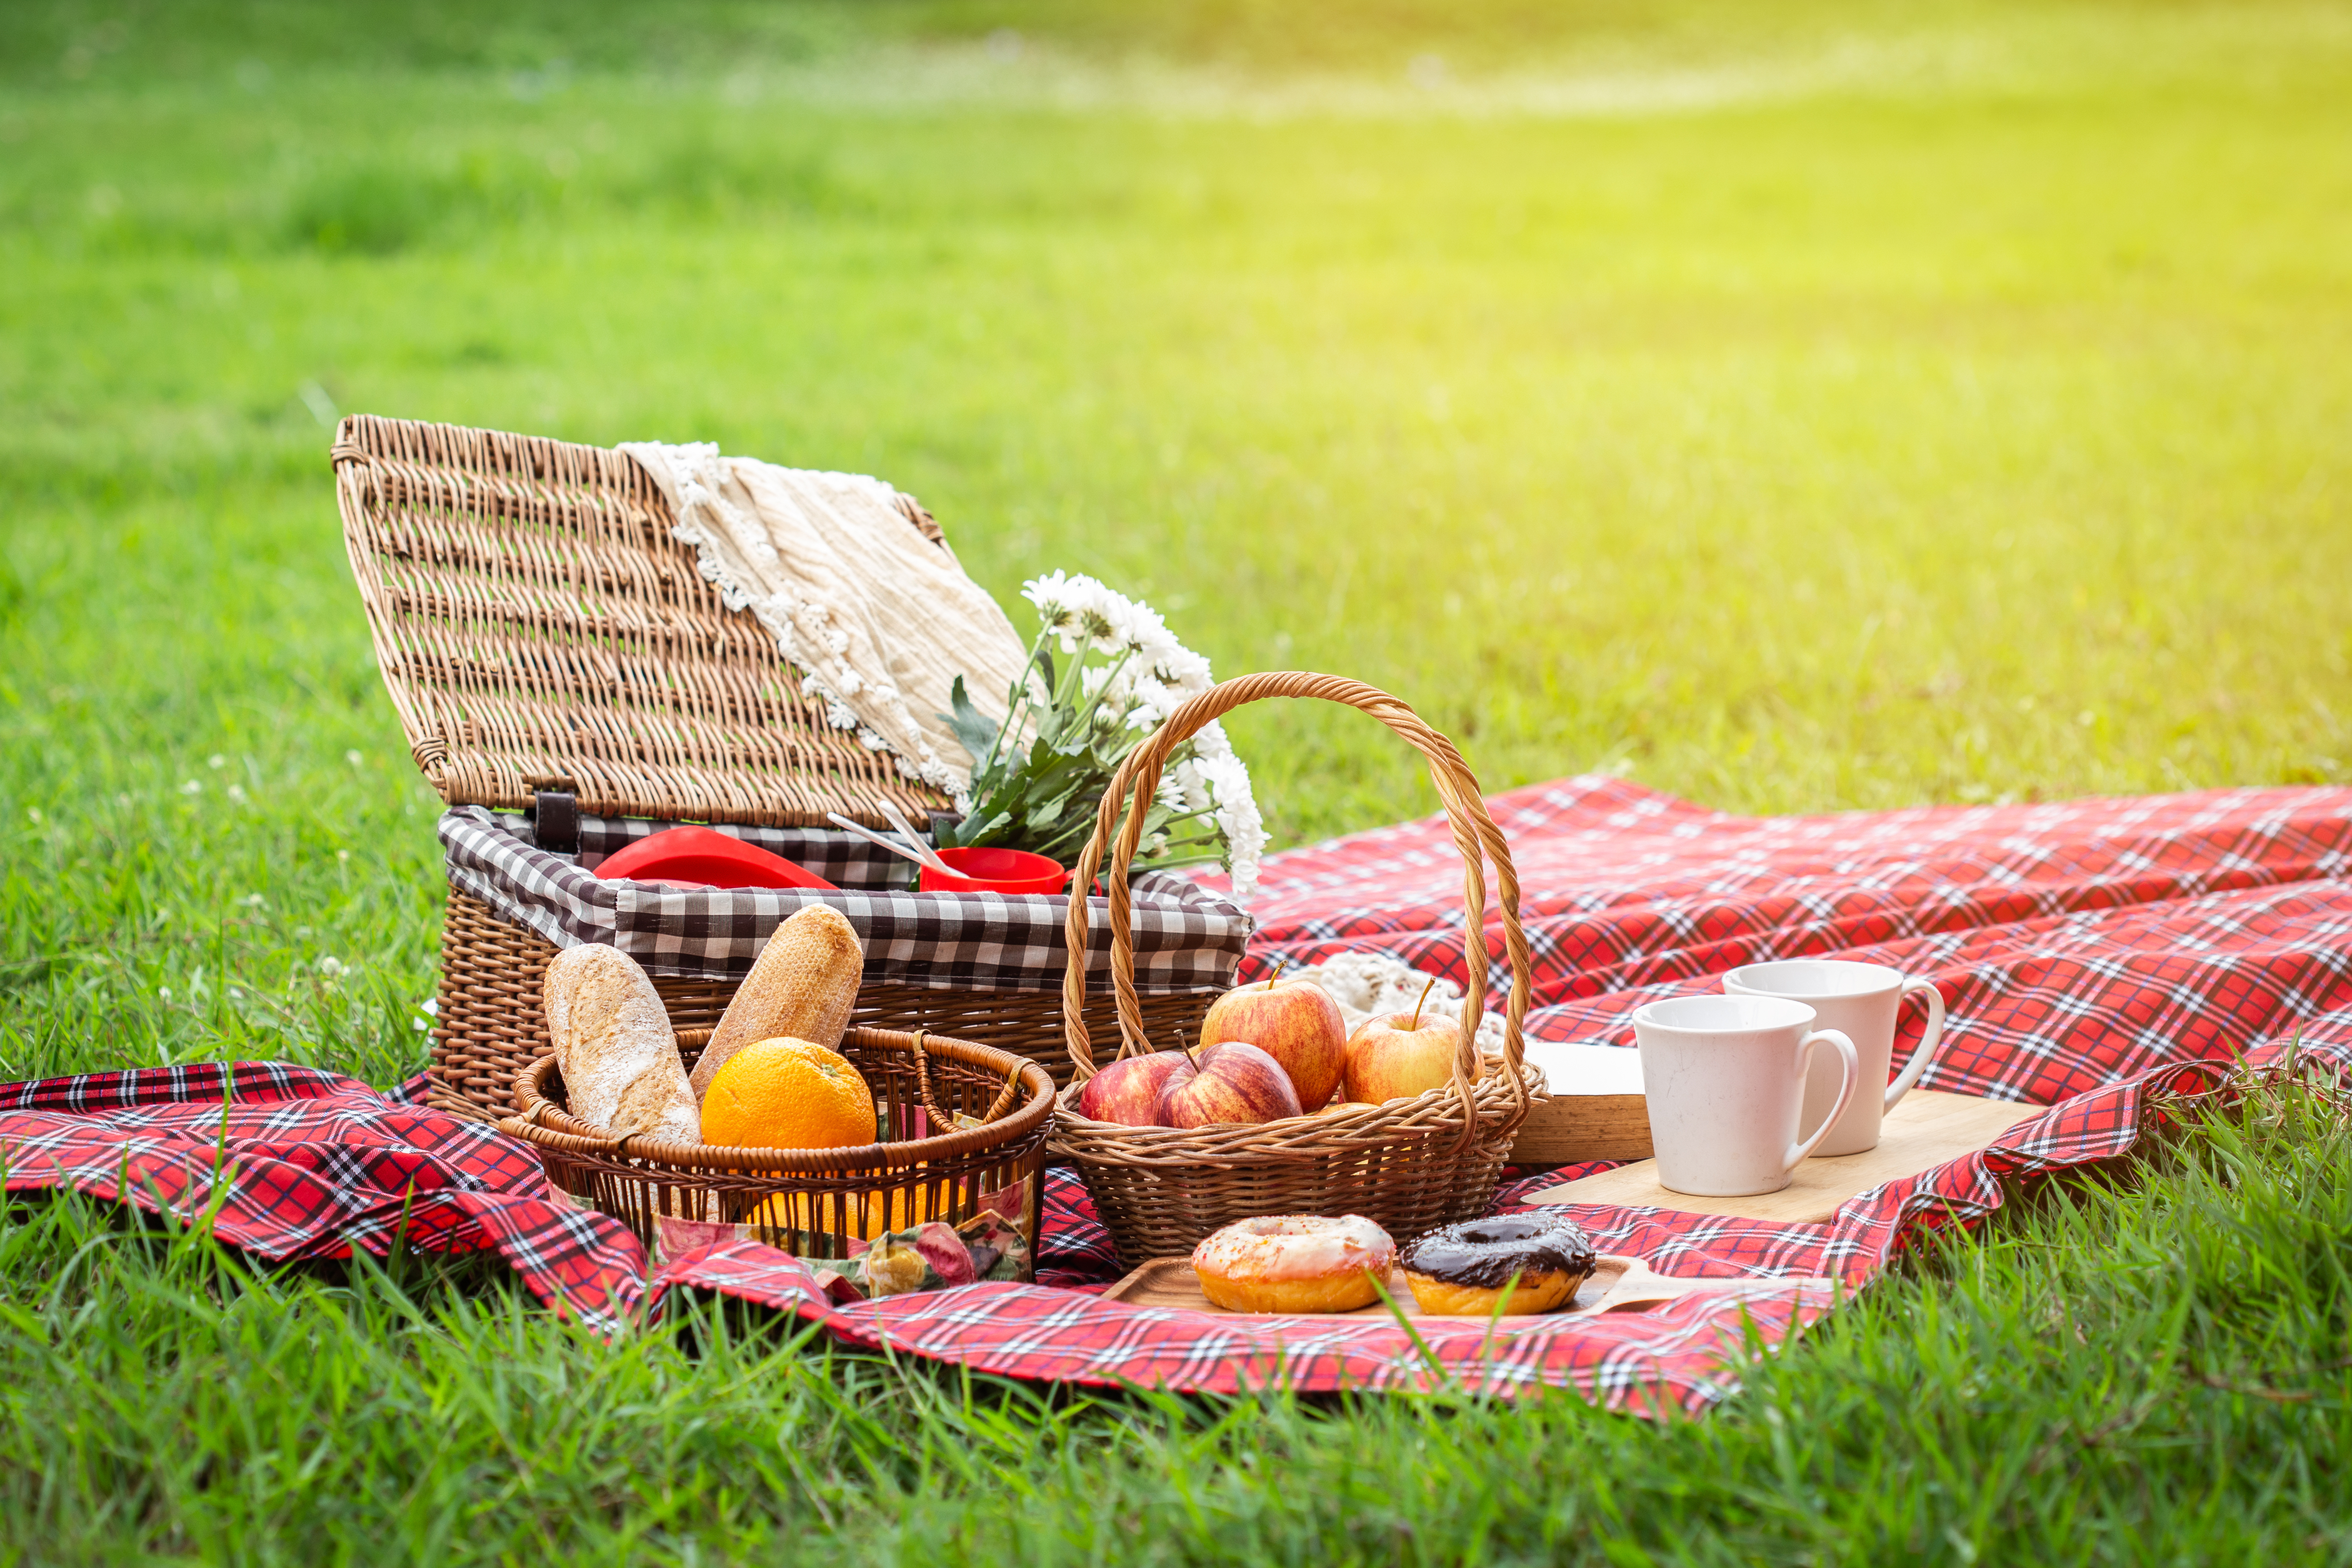 Picknick auf der Wiese | Shutterstock